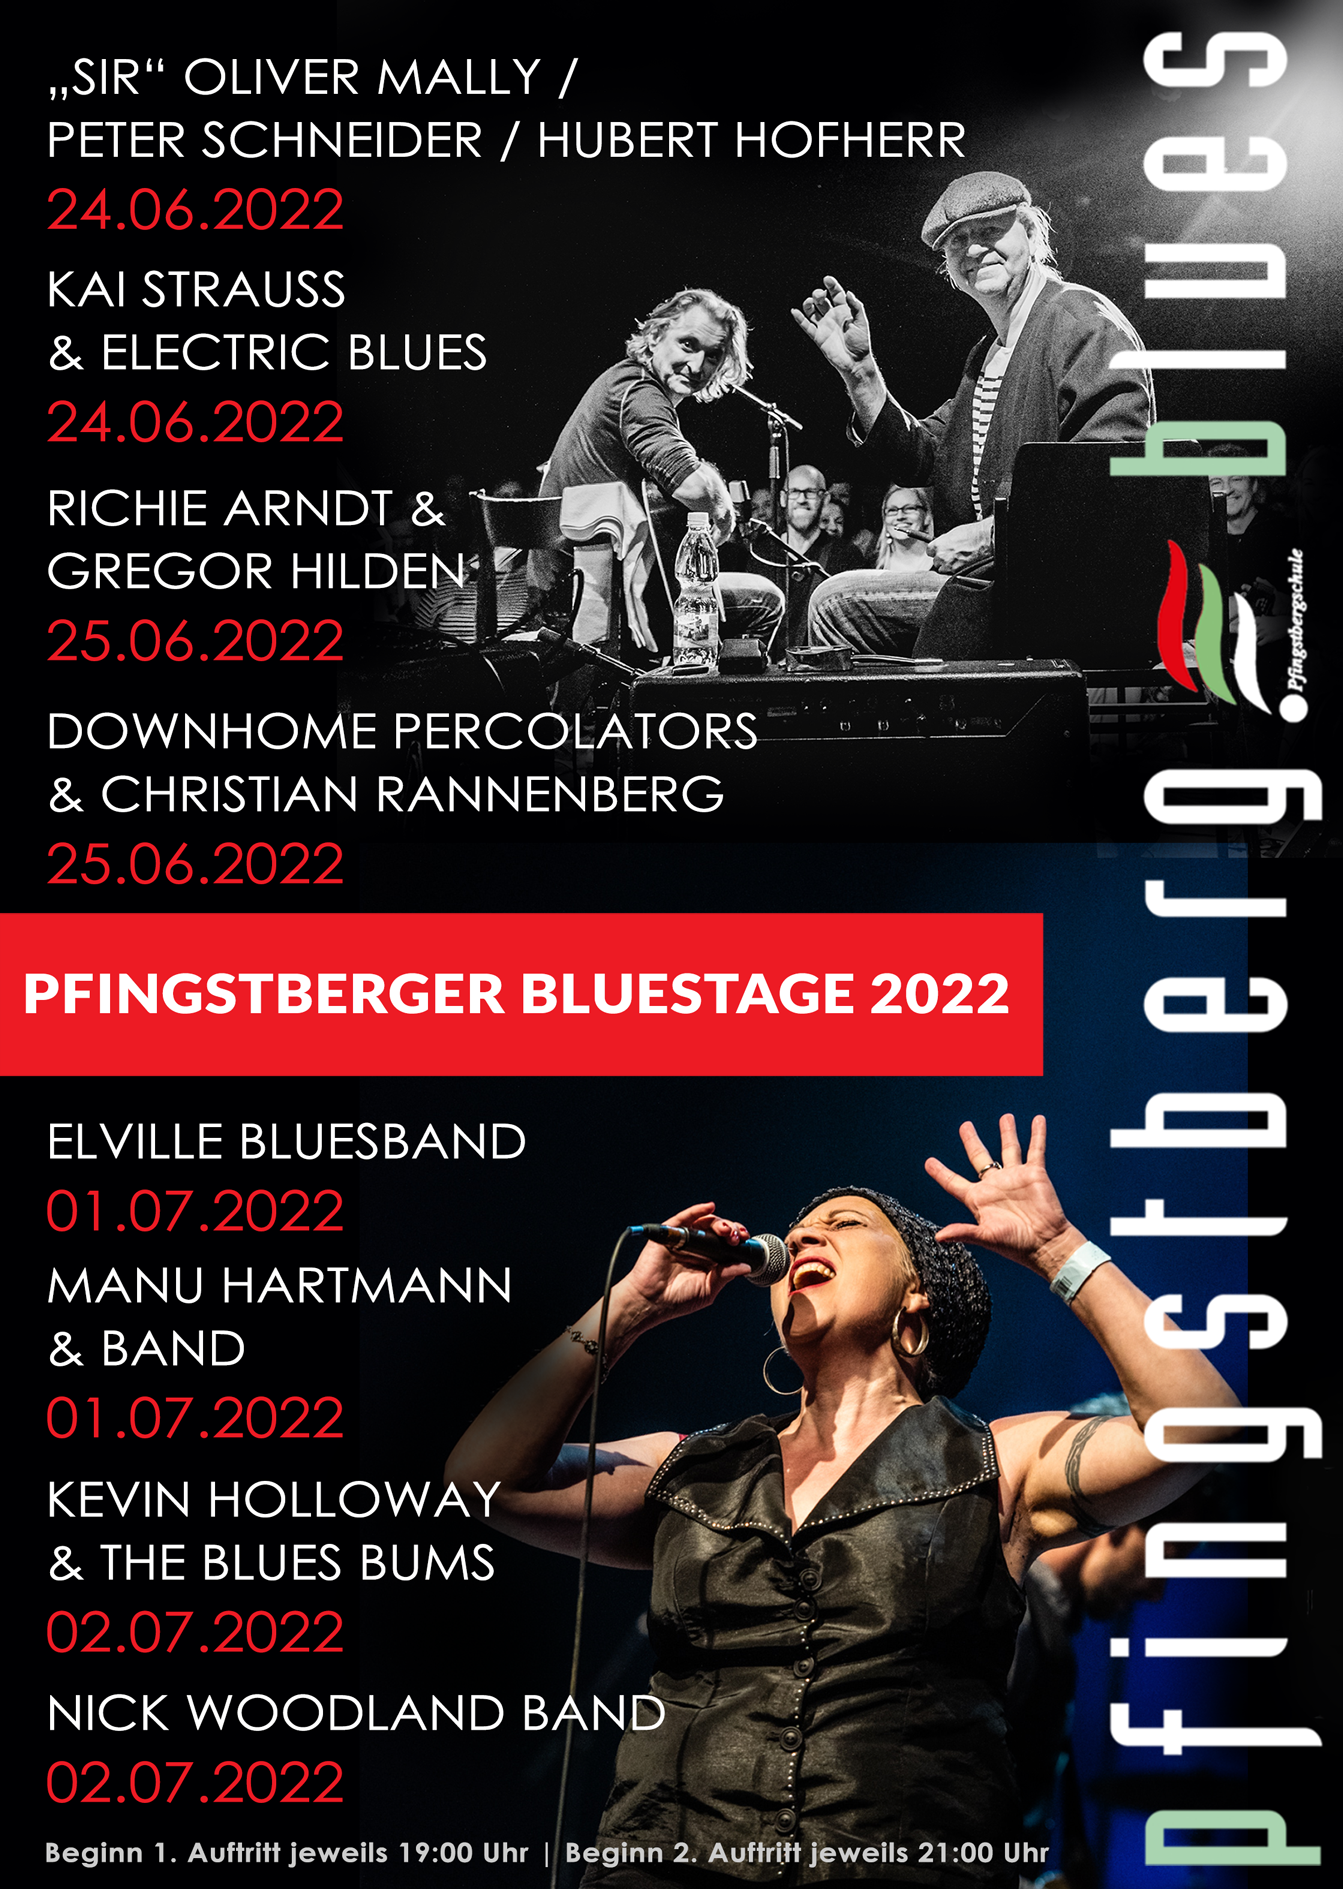 Pfingstberger Bluestage Mannheim 2022